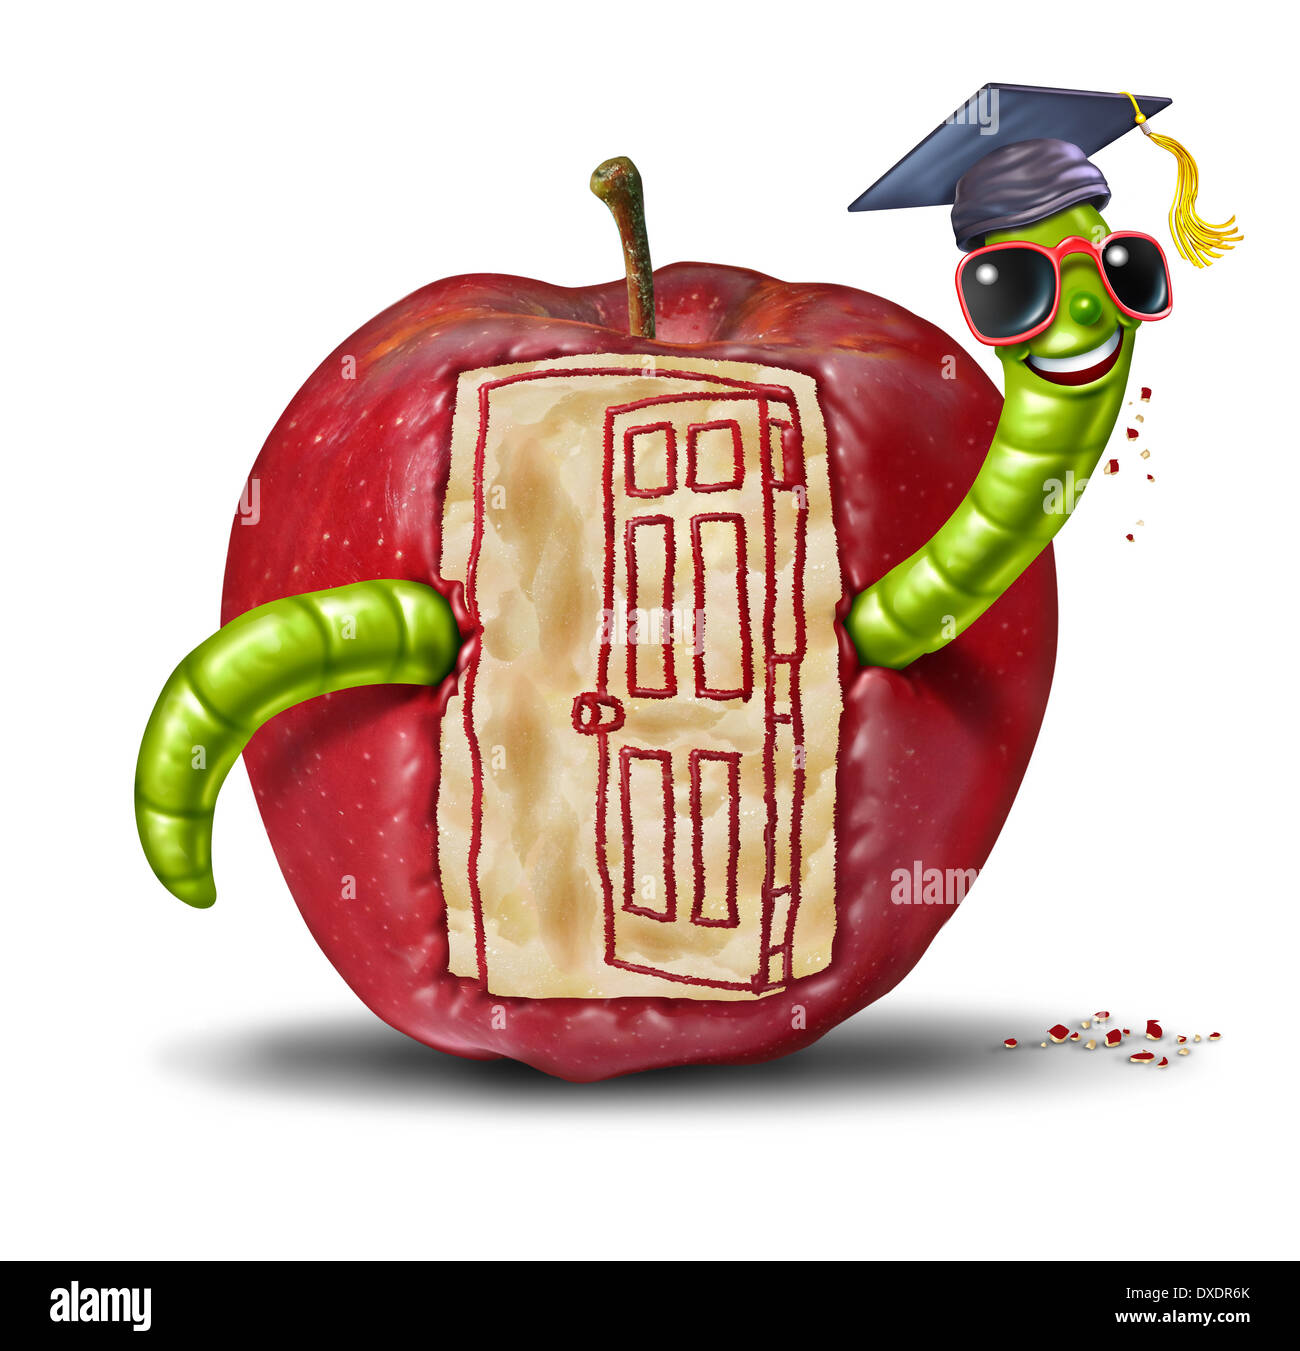 Concept de la porte ouverte de l'école comme un ver émergeant d'une pomme qui a été mangé pour former la forme d'une porte d'entrée ouverte comme un symbole de l'éducation et l'apprentissage de la communication. Banque D'Images